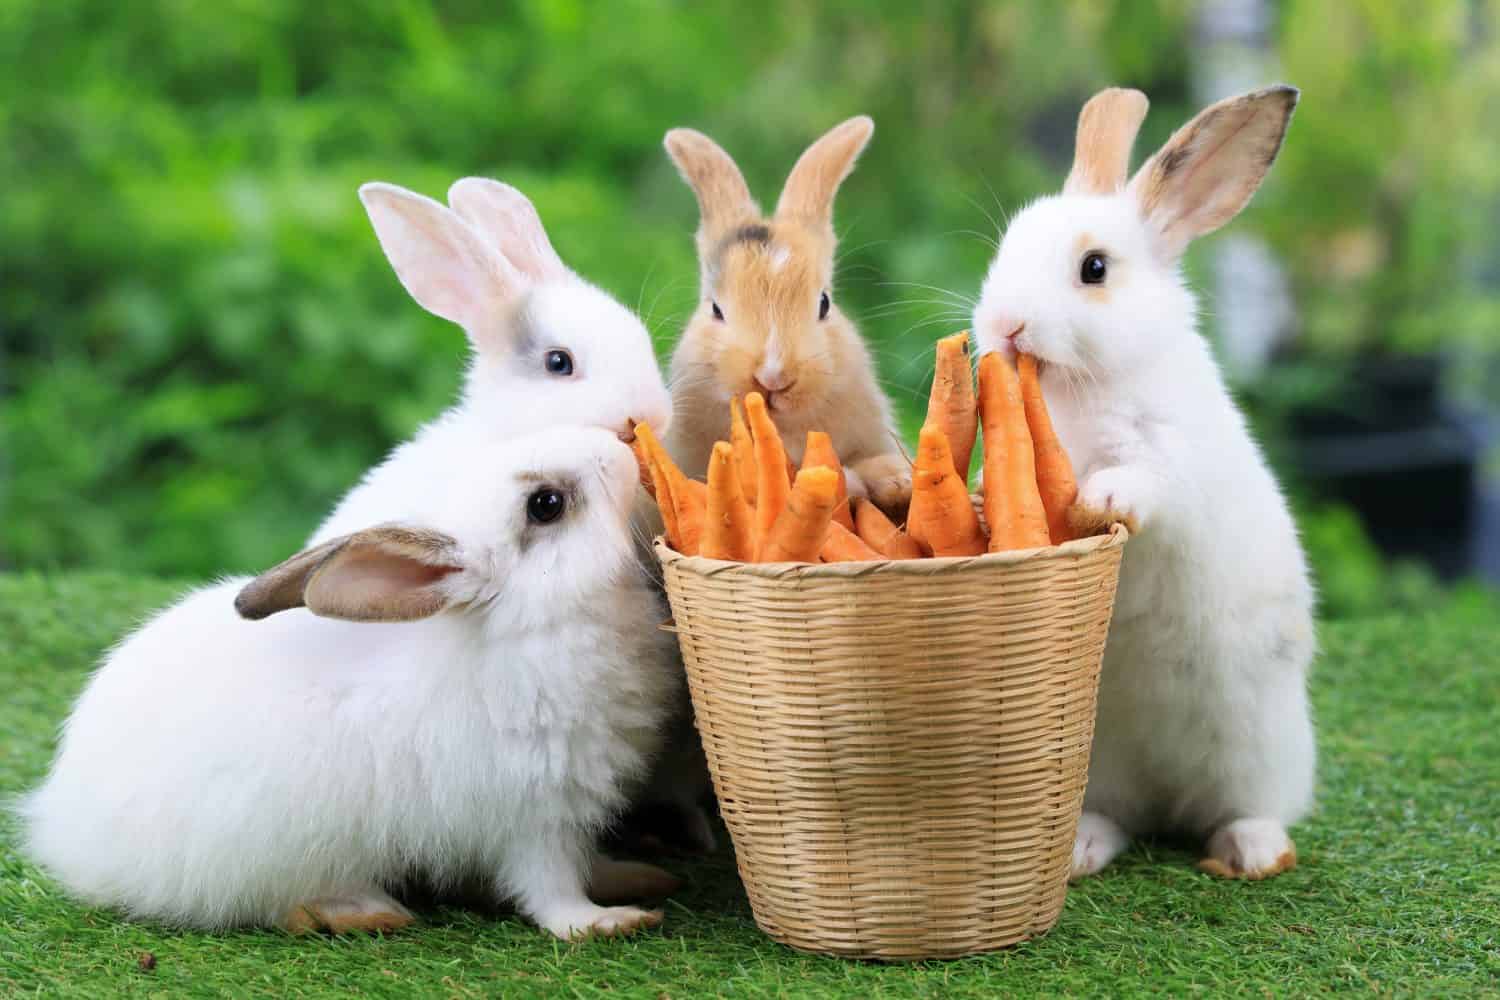 Gruppo di conigli di pasqua sani e adorabili del coniglietto del bambino che mangiano cibo, carota, erba sul fondo verde della natura del giardino.  Simpatici conigli soffici che annusano, si guardano intorno, la vita della natura.  Simbolo del giorno di Pasqua.